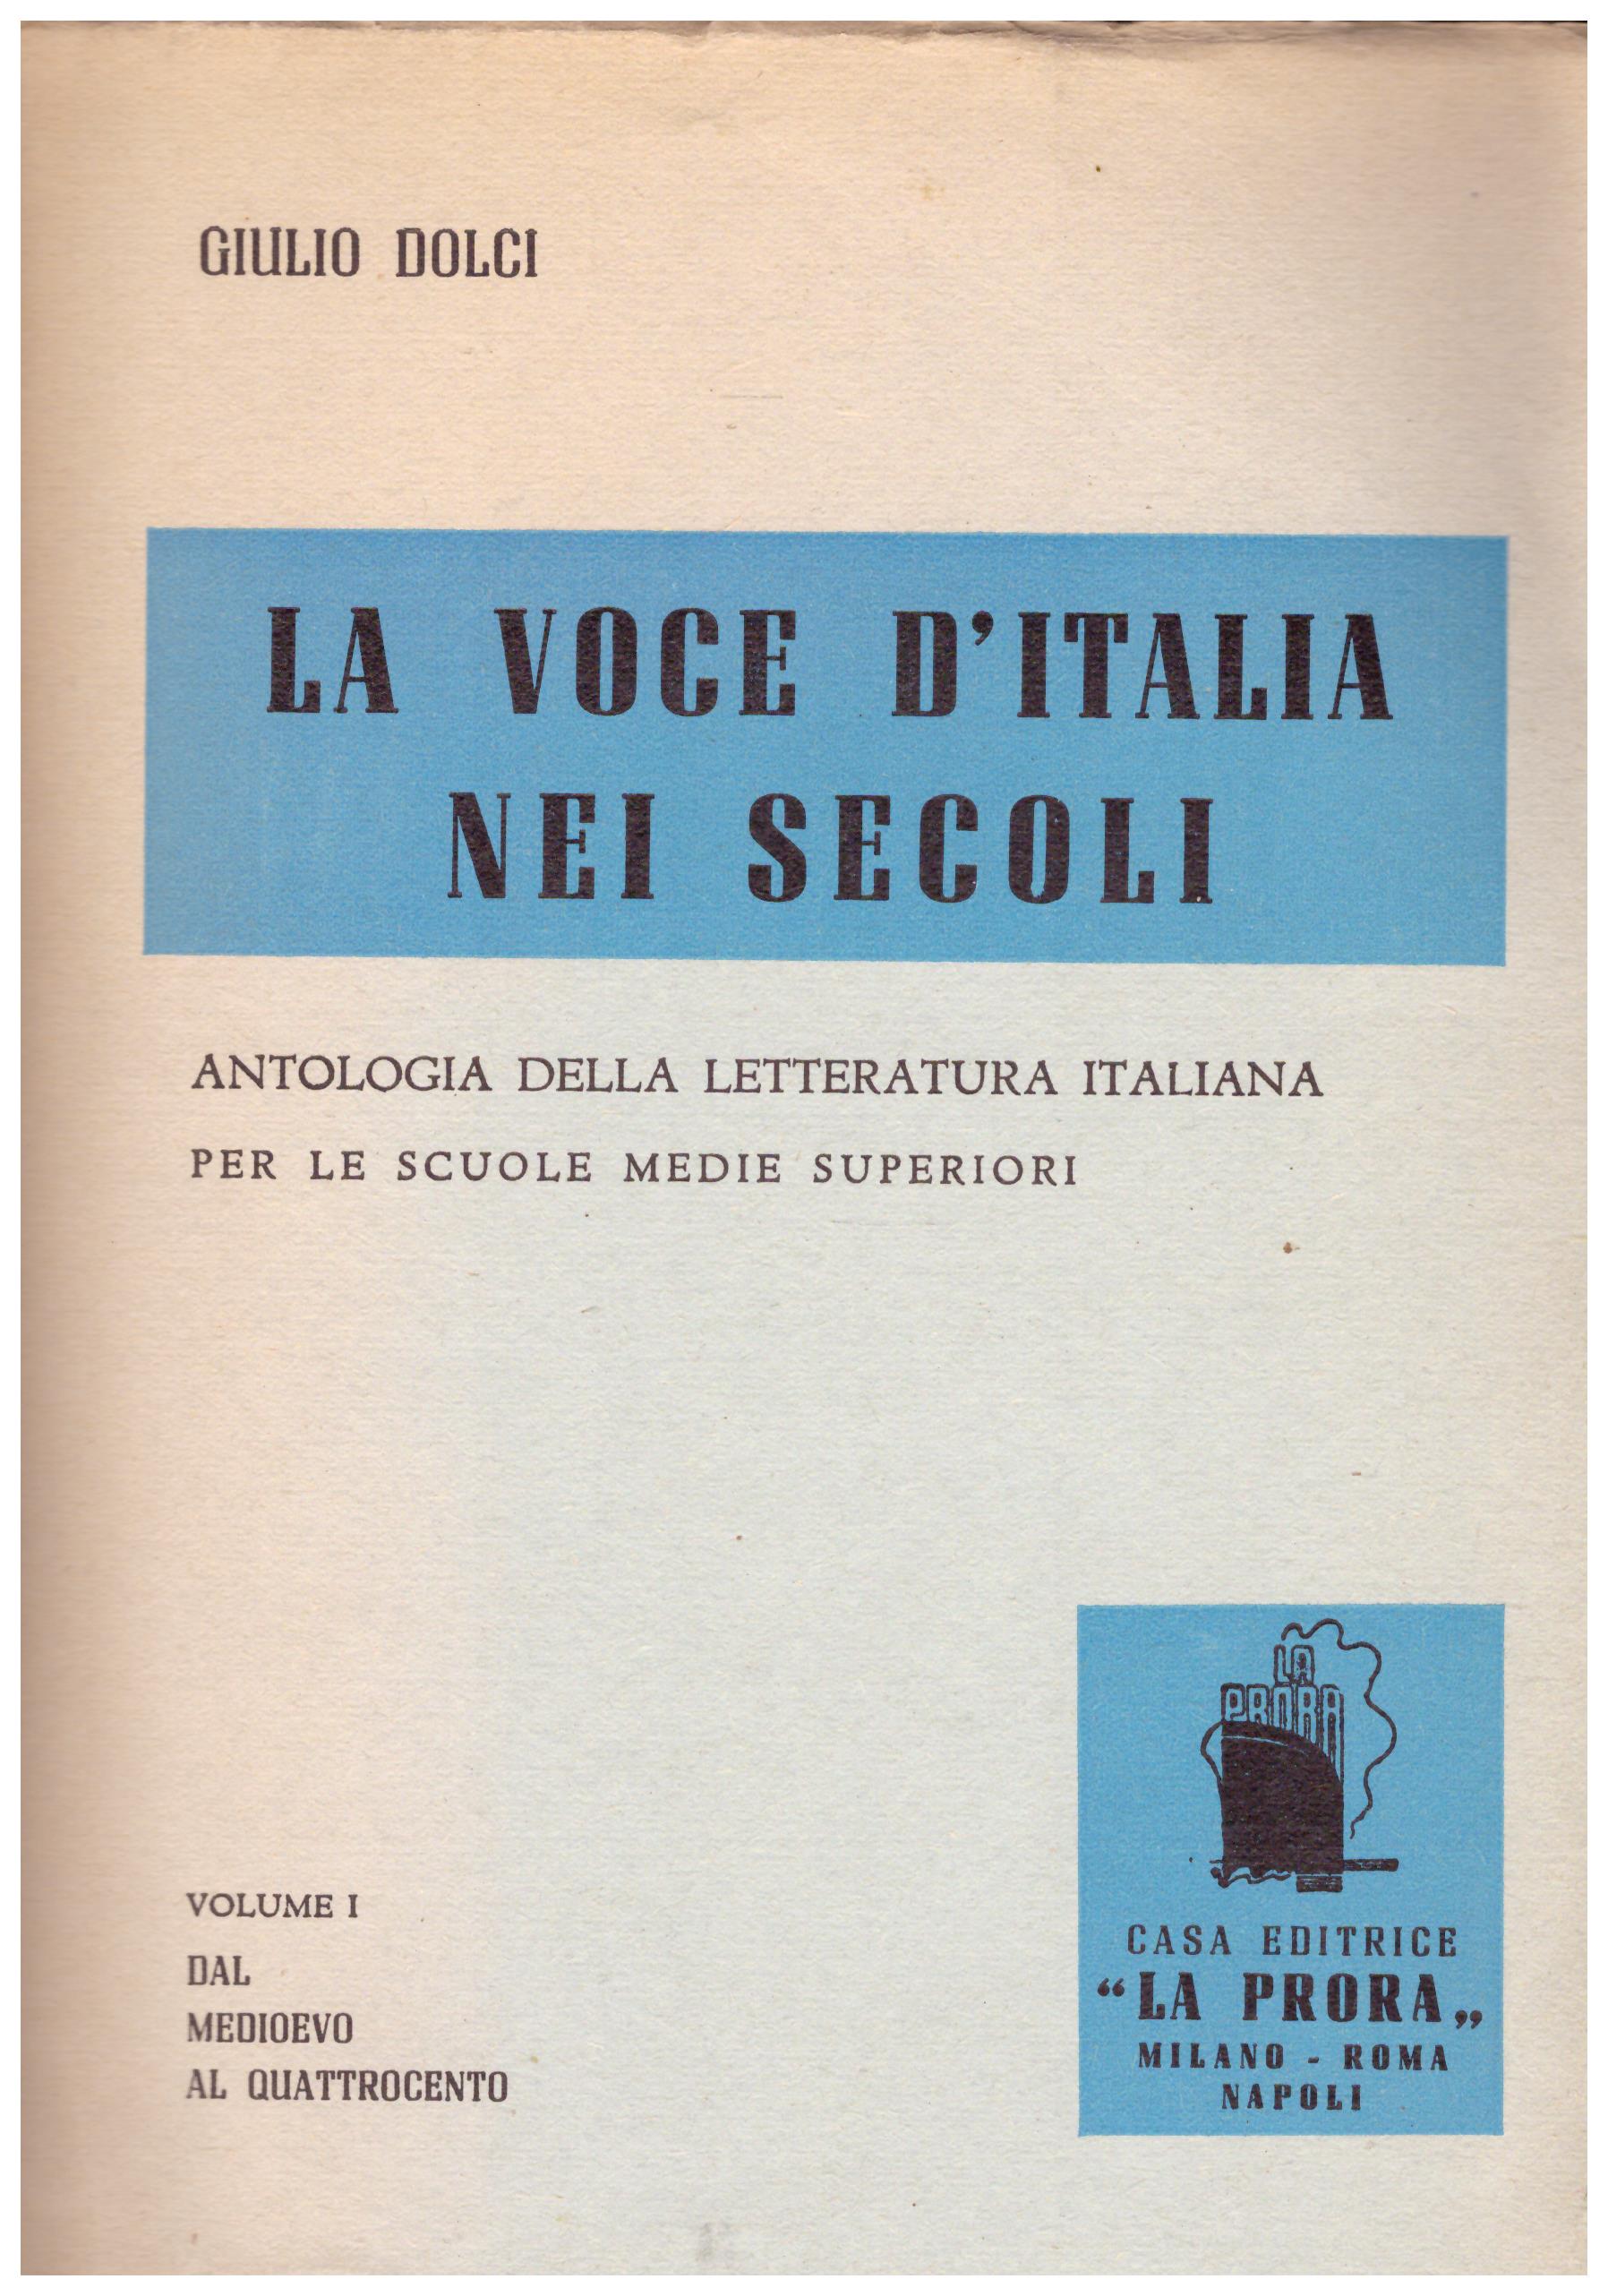 Titolo: La voce d'italia nei secoli vol 1 autore: Giulio Dolci editore: La Prora 1952